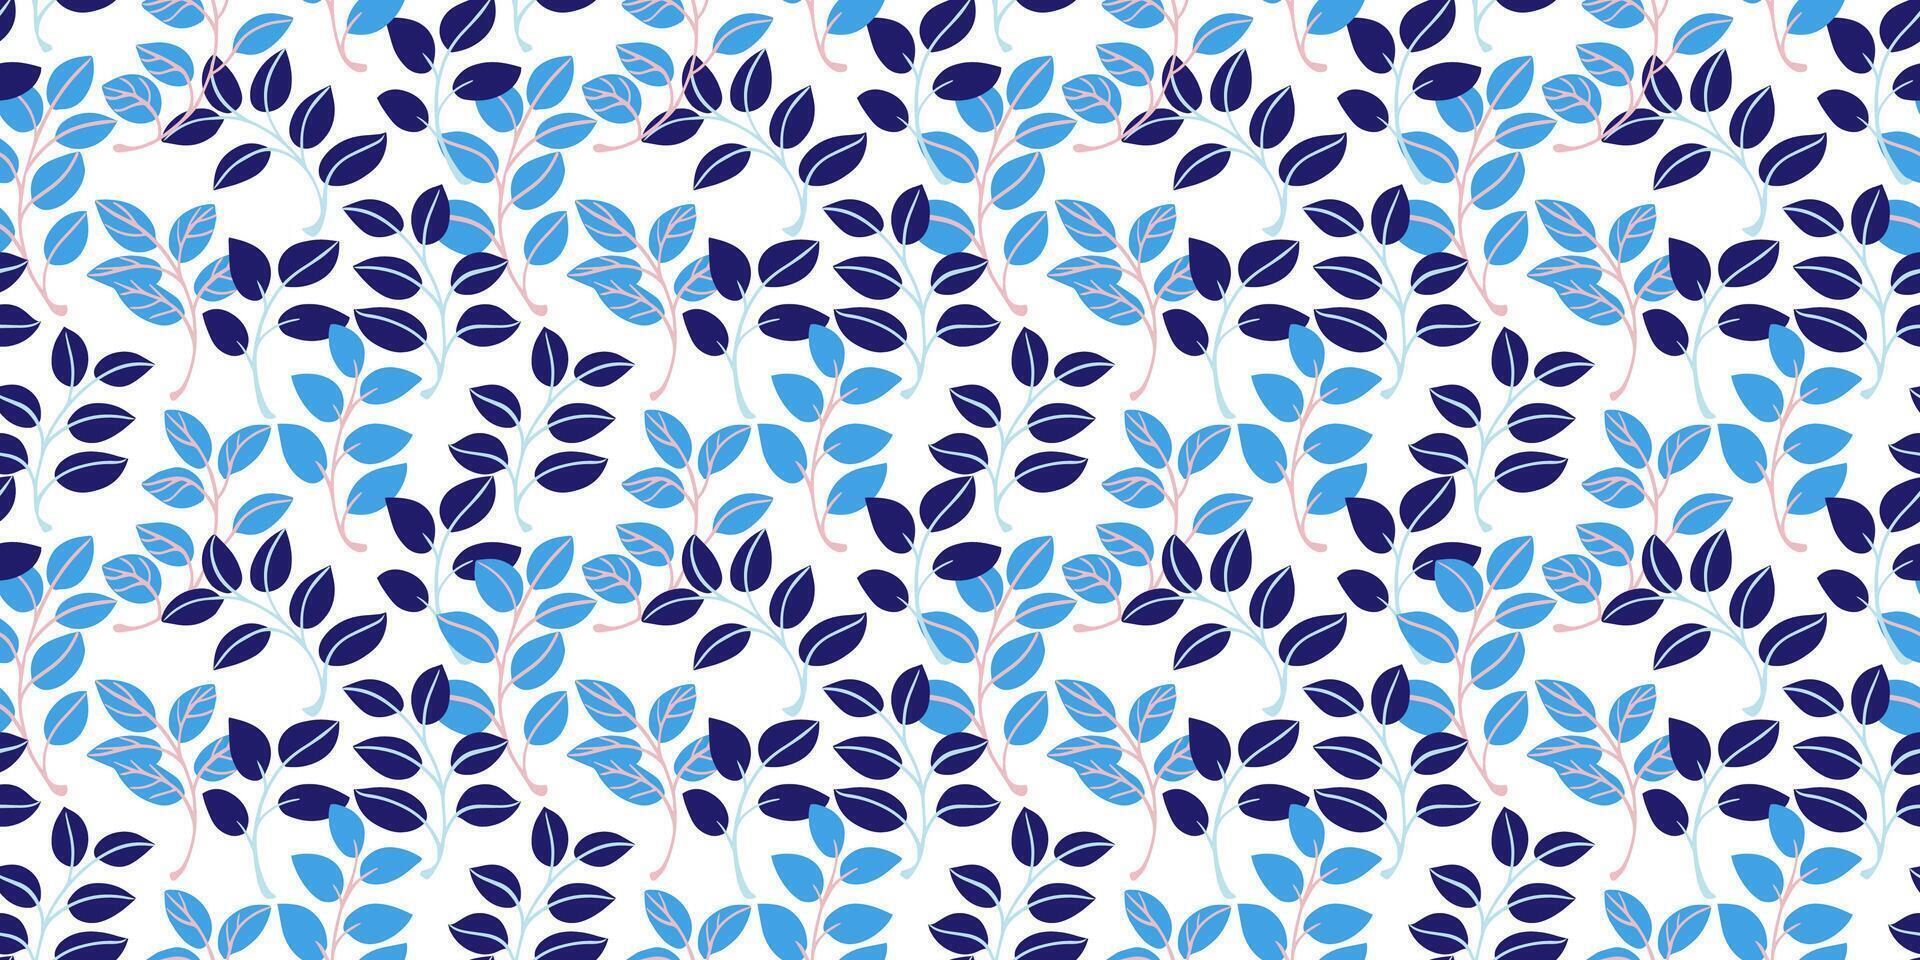 abstrakt söt mycket liten löv grenar sammanflätade in i en sömlös mönster. blå ljus kreativ blad stjälkar mönstrad på en vit bakgrund. hand teckning. collage för utskrift, design, tyg vektor